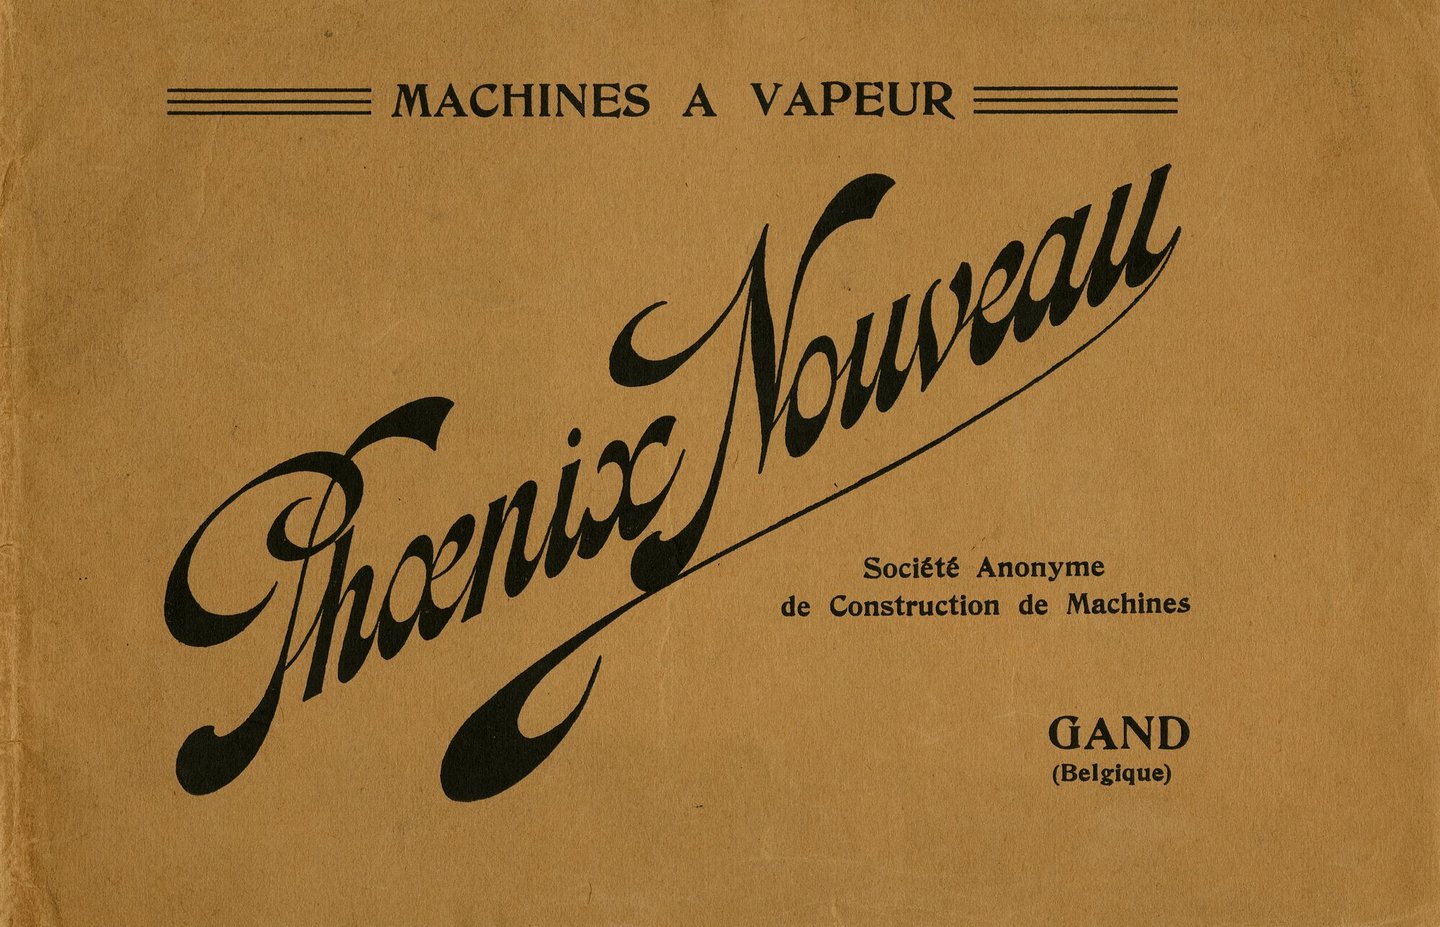 Brochure met bedrijfsinformatie van machinebouwer Phoenix Nouveau in Gent